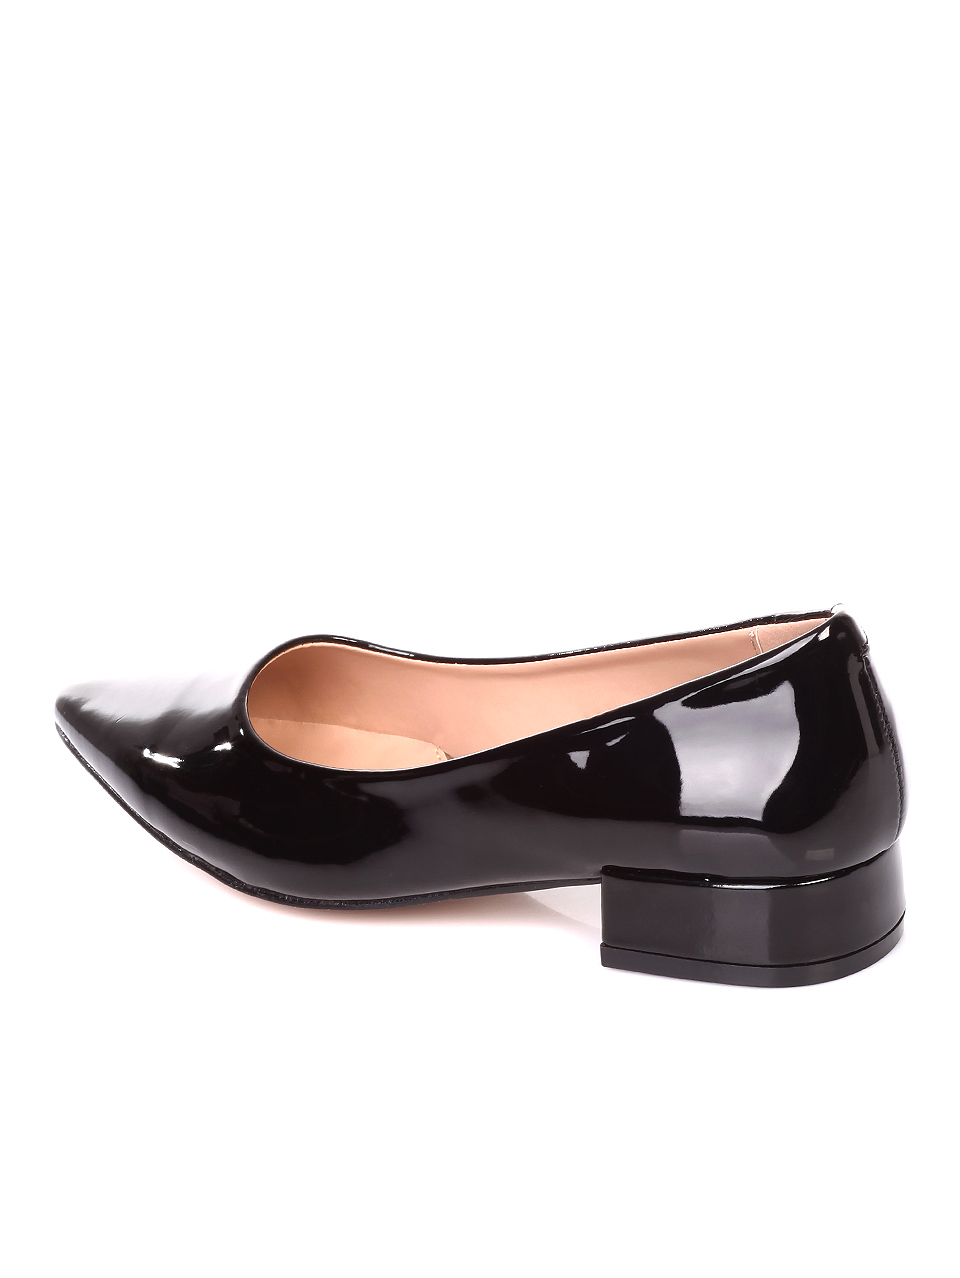 Ежедневни дамски обувки от лак в бежово 3W-19096 black